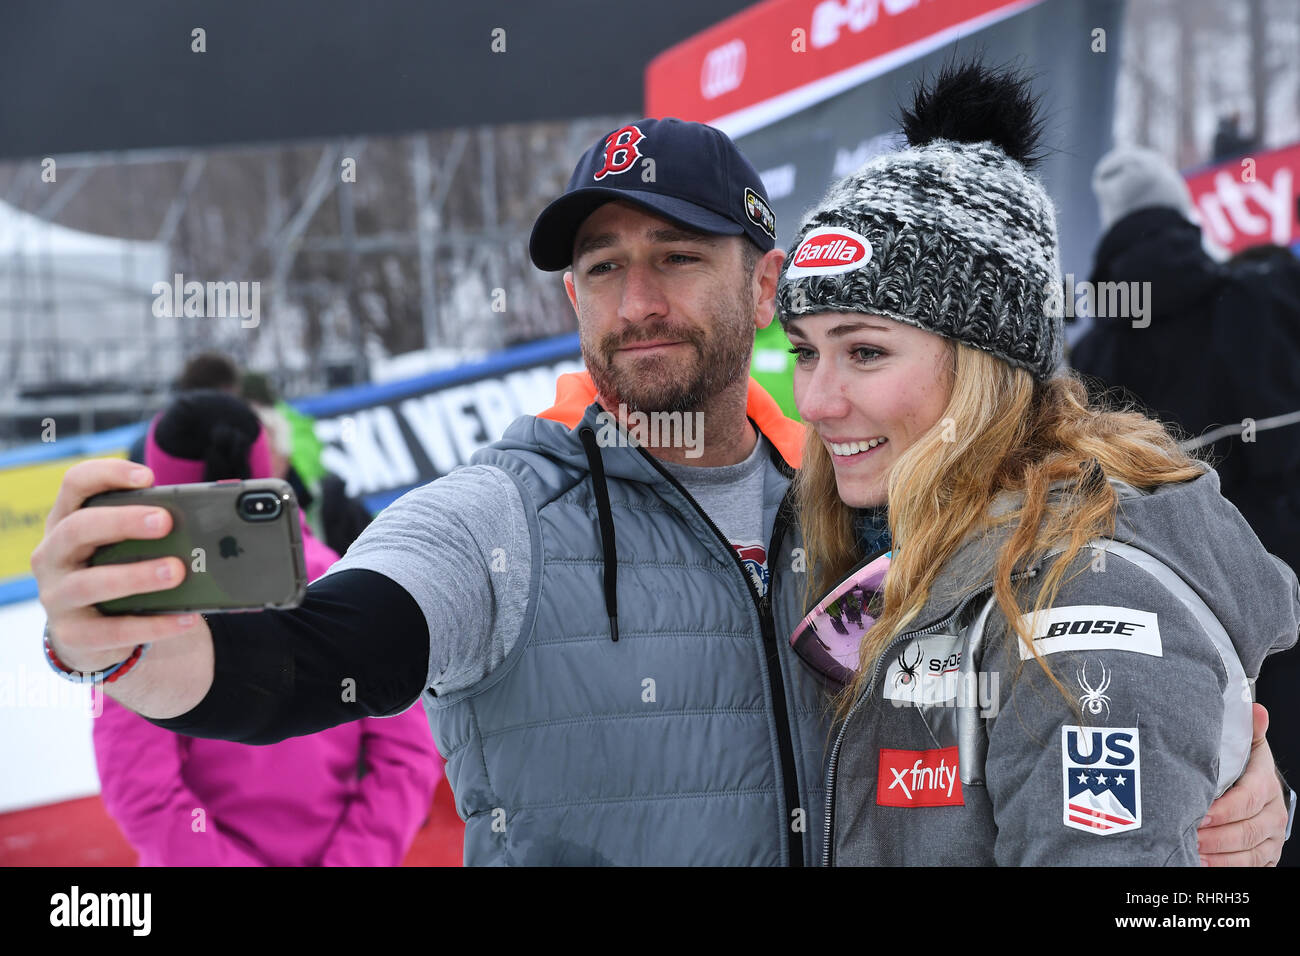 KILLINGTON, Stati Uniti d'America - 25 novembre: Mikaela Shiffrin selfie riprese con un amico durante la Audi FIS Coppa del Mondo di Sci Alpino Femminile Slalom gigante. Foto Stock